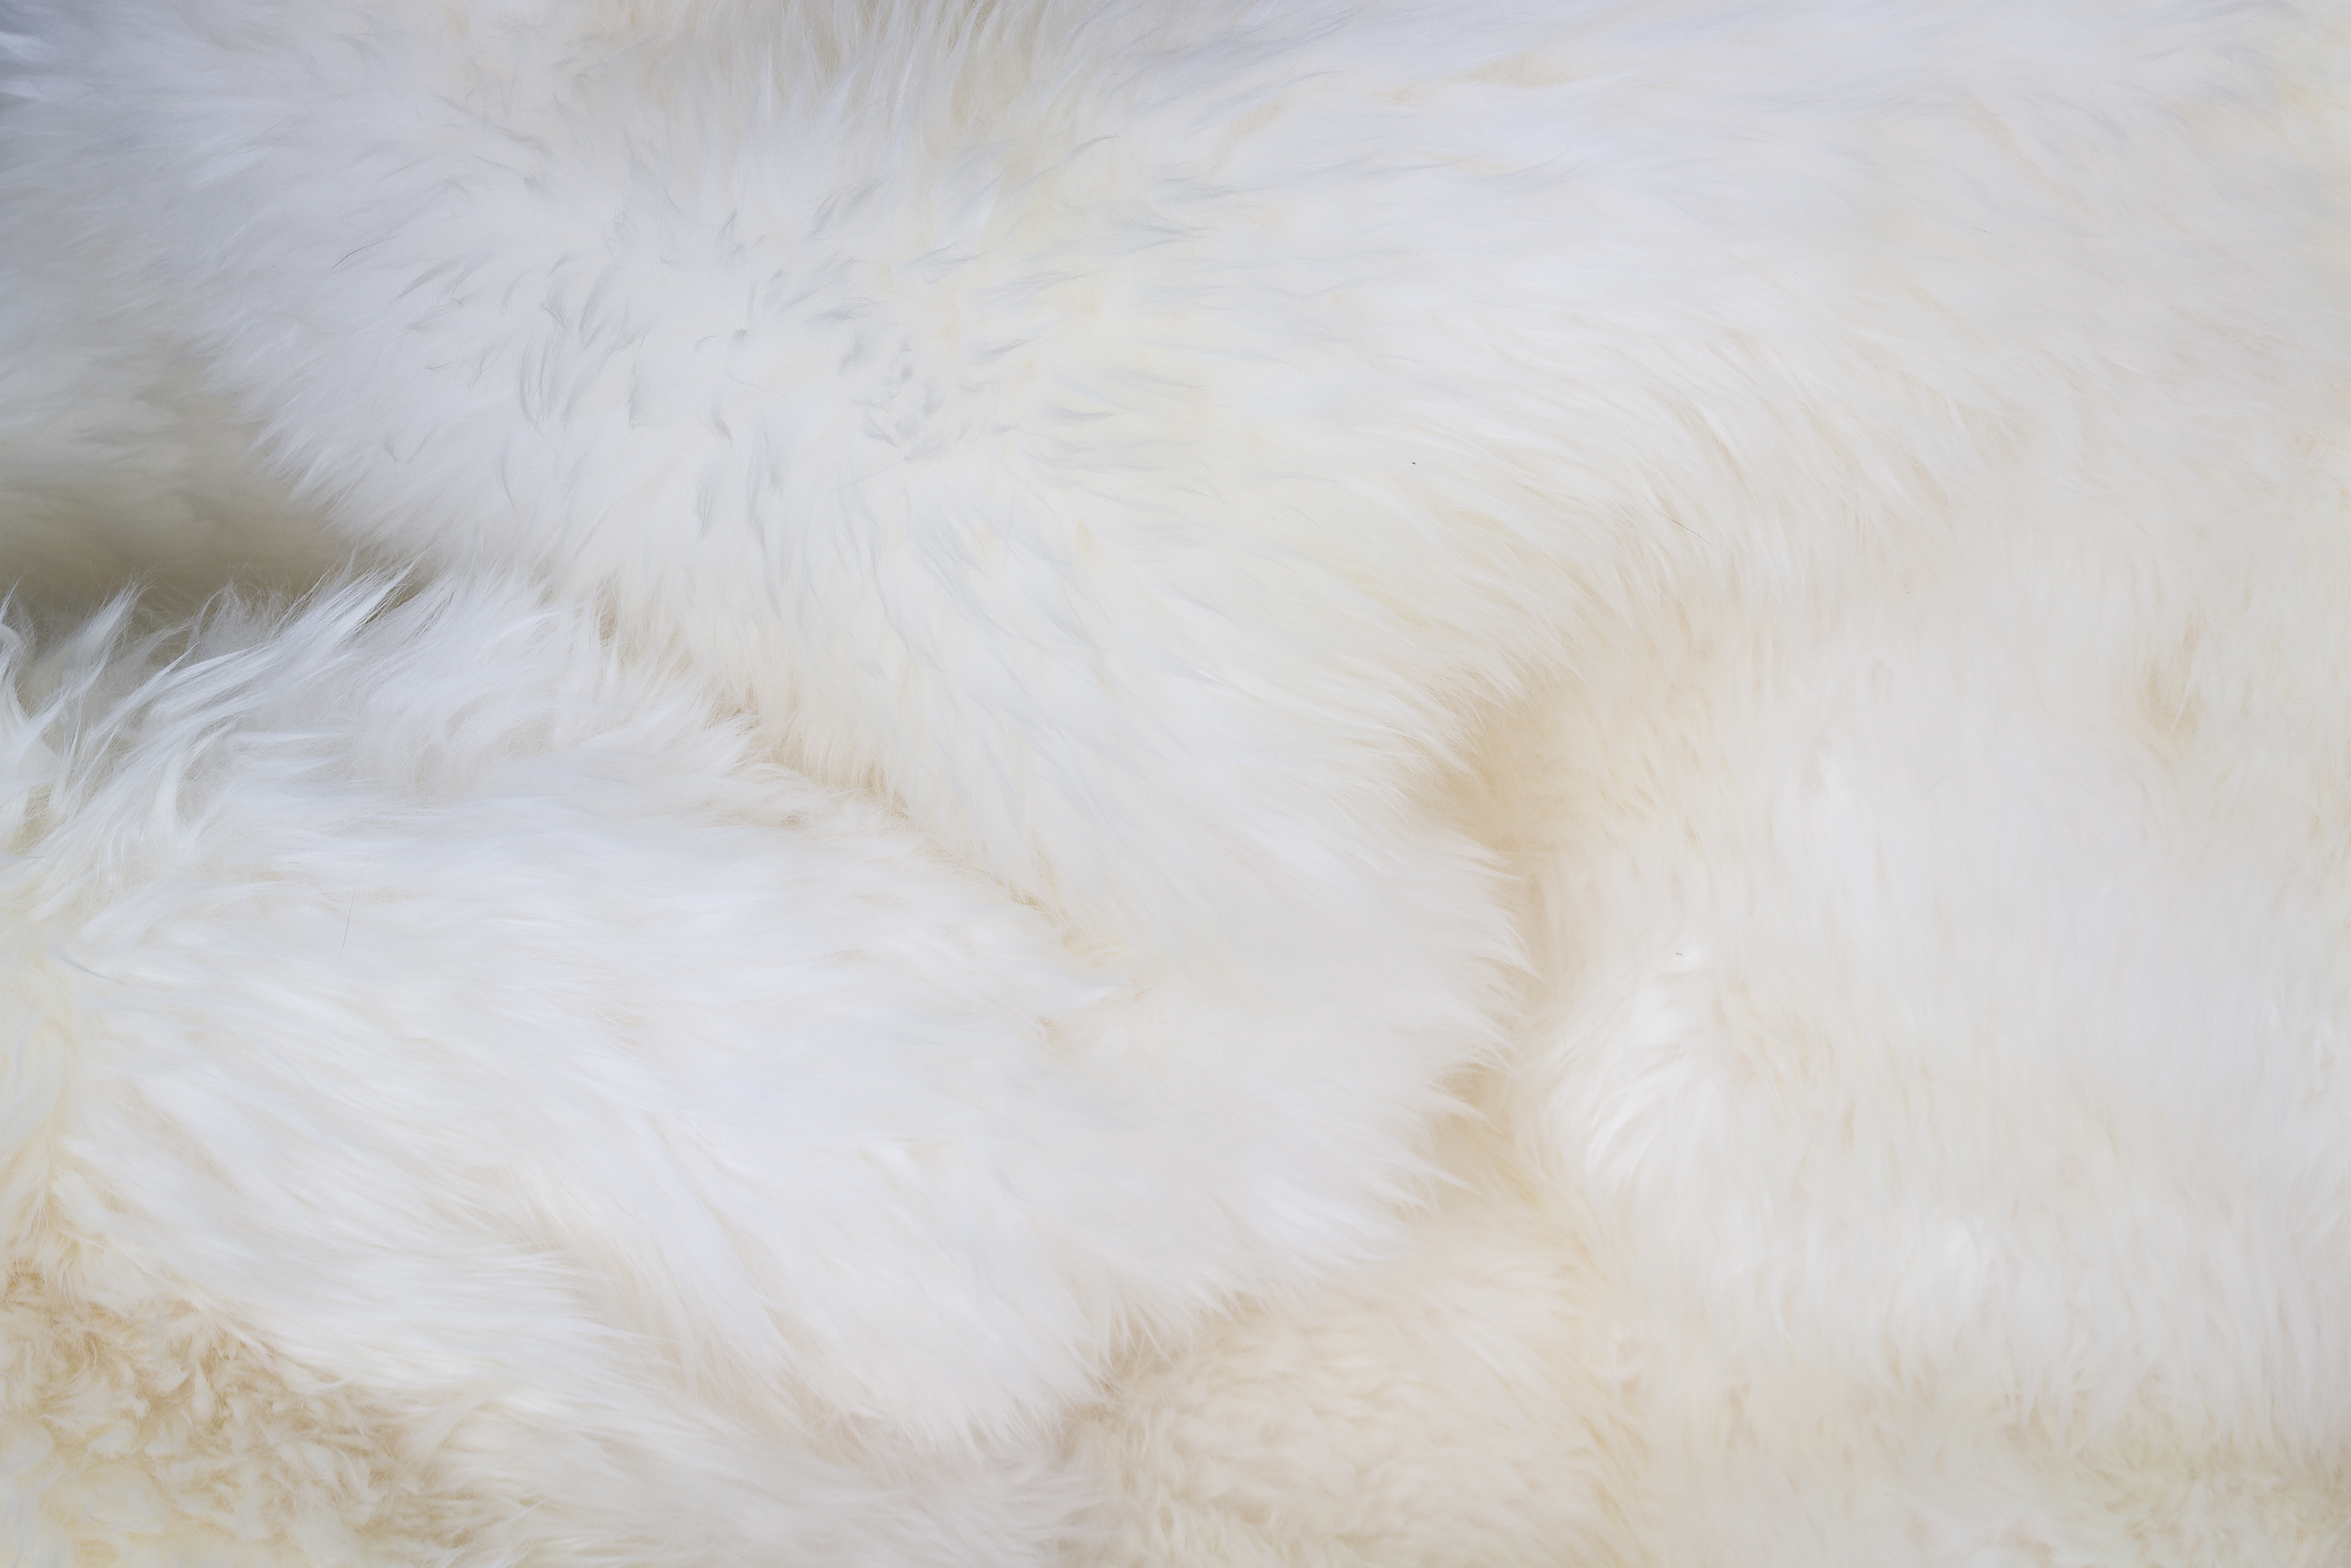 Australian Lamb Blanket - Lamb Fur Carpet in Natural White